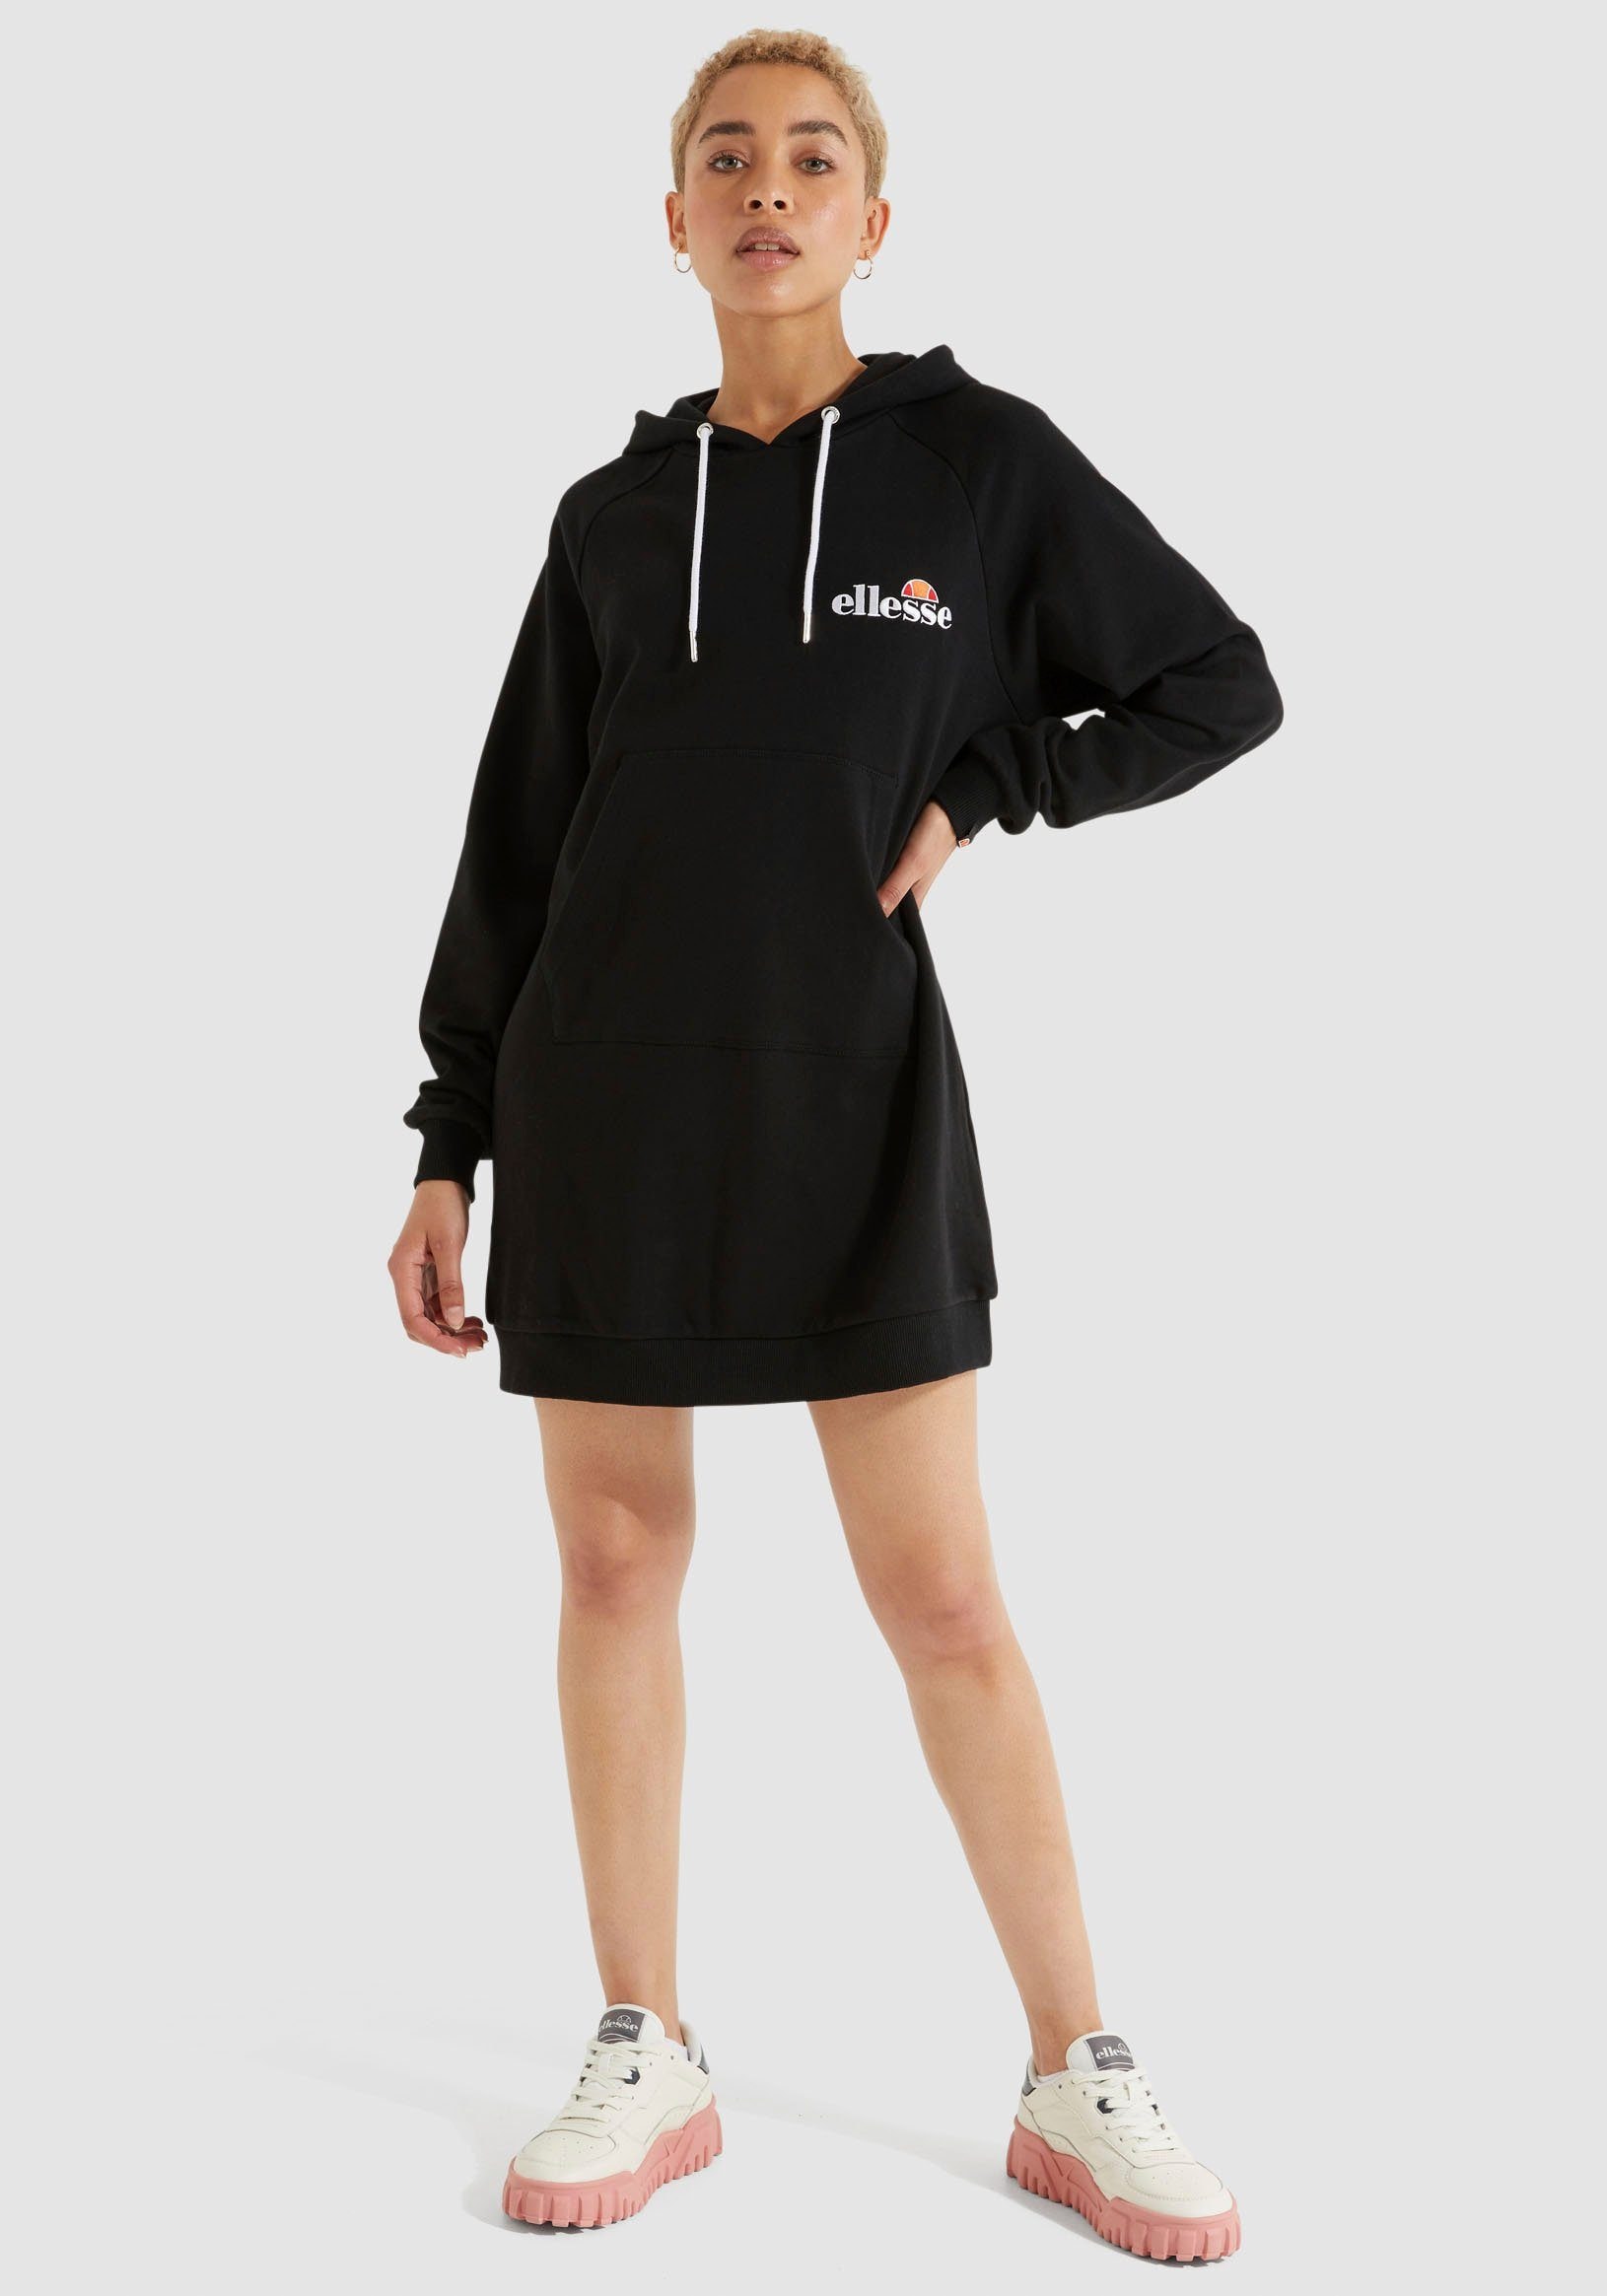 Ellesse Sweatkleid »Honey Dress« bestellen im OTTO Online Shop